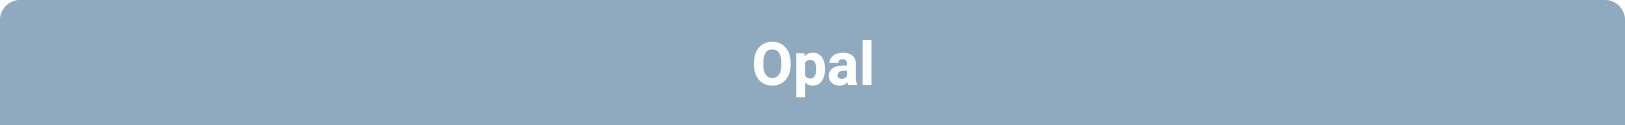 Opal Onboarding Package